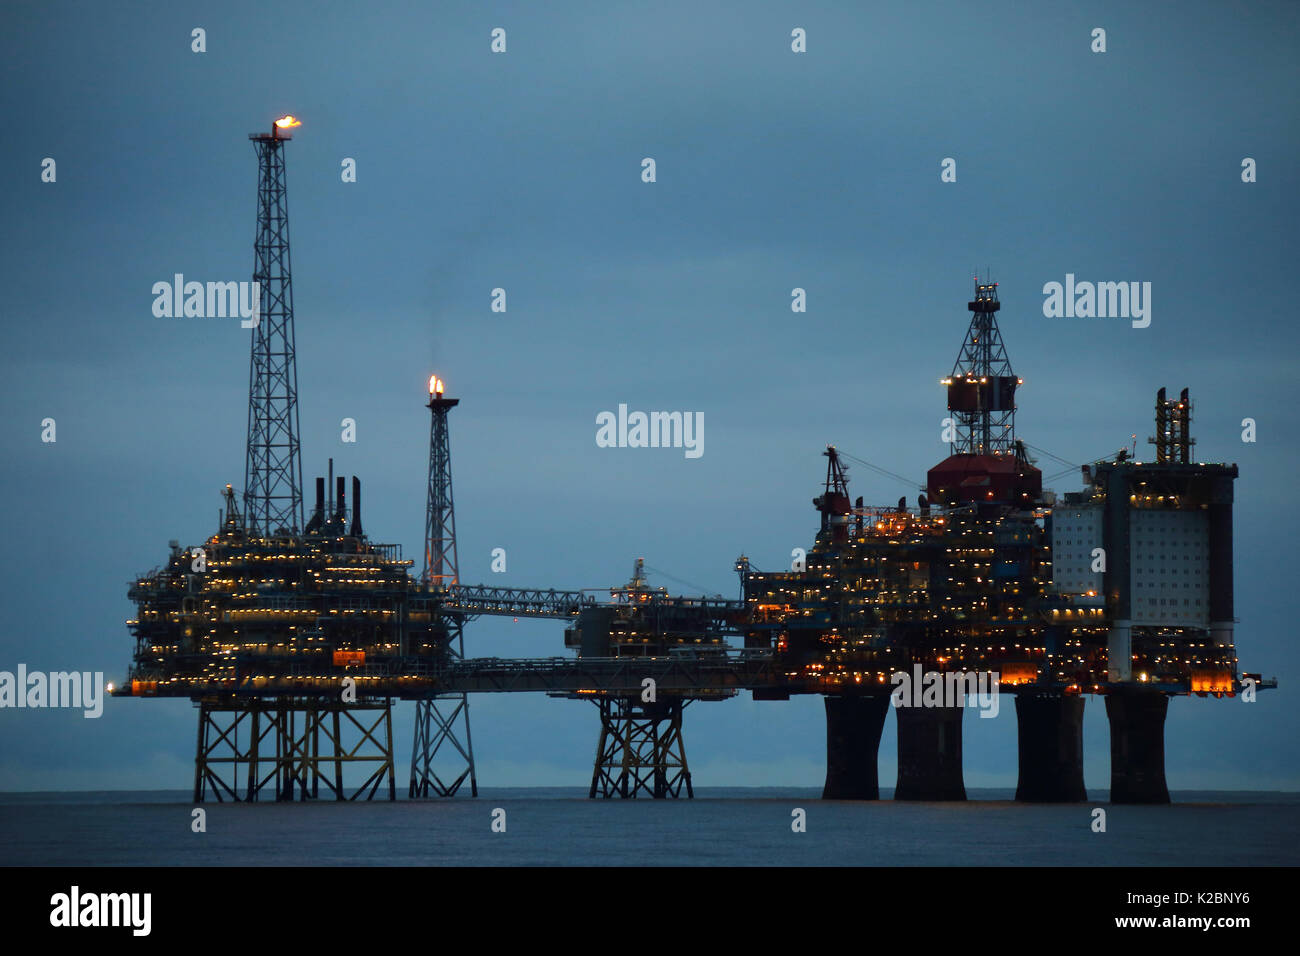 La plate-forme de production d'huile de Sleipner. Mer du Nord, octobre 2015. Banque D'Images